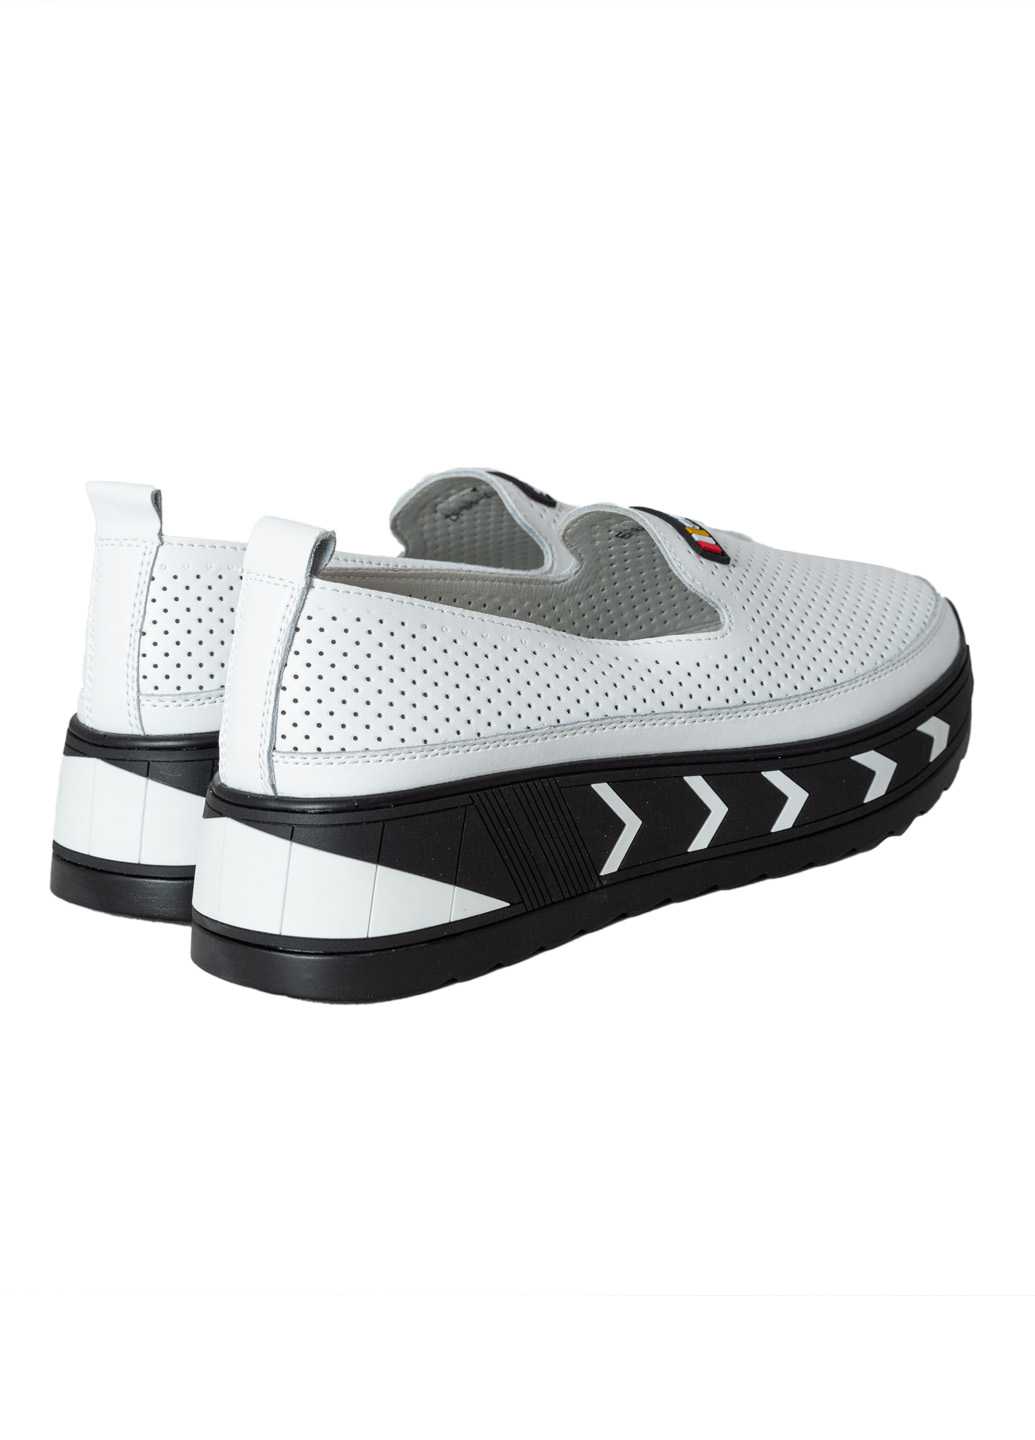 Жіночі туфлі Lifexpert білого кольору перфорація